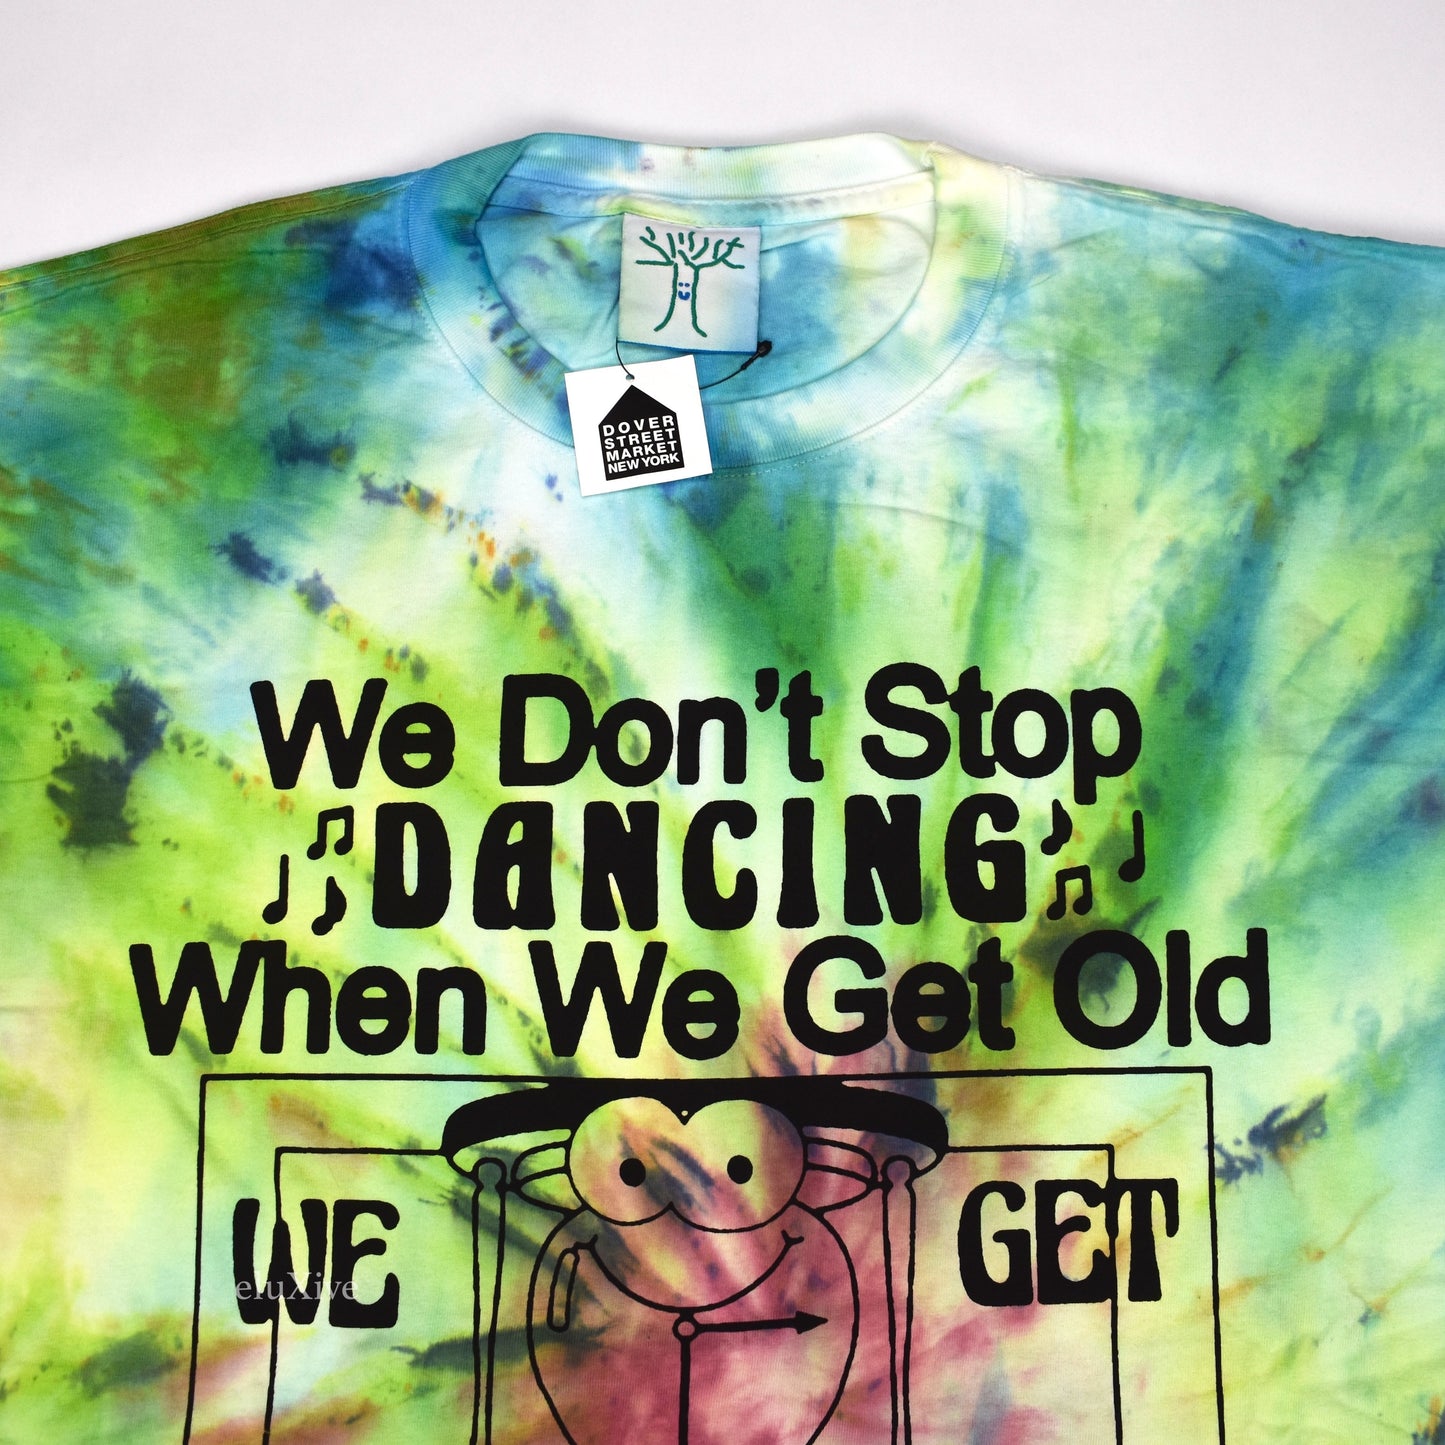 Online Ceramics - We Don't Stop Dancing Tie-Dye T-Shirt